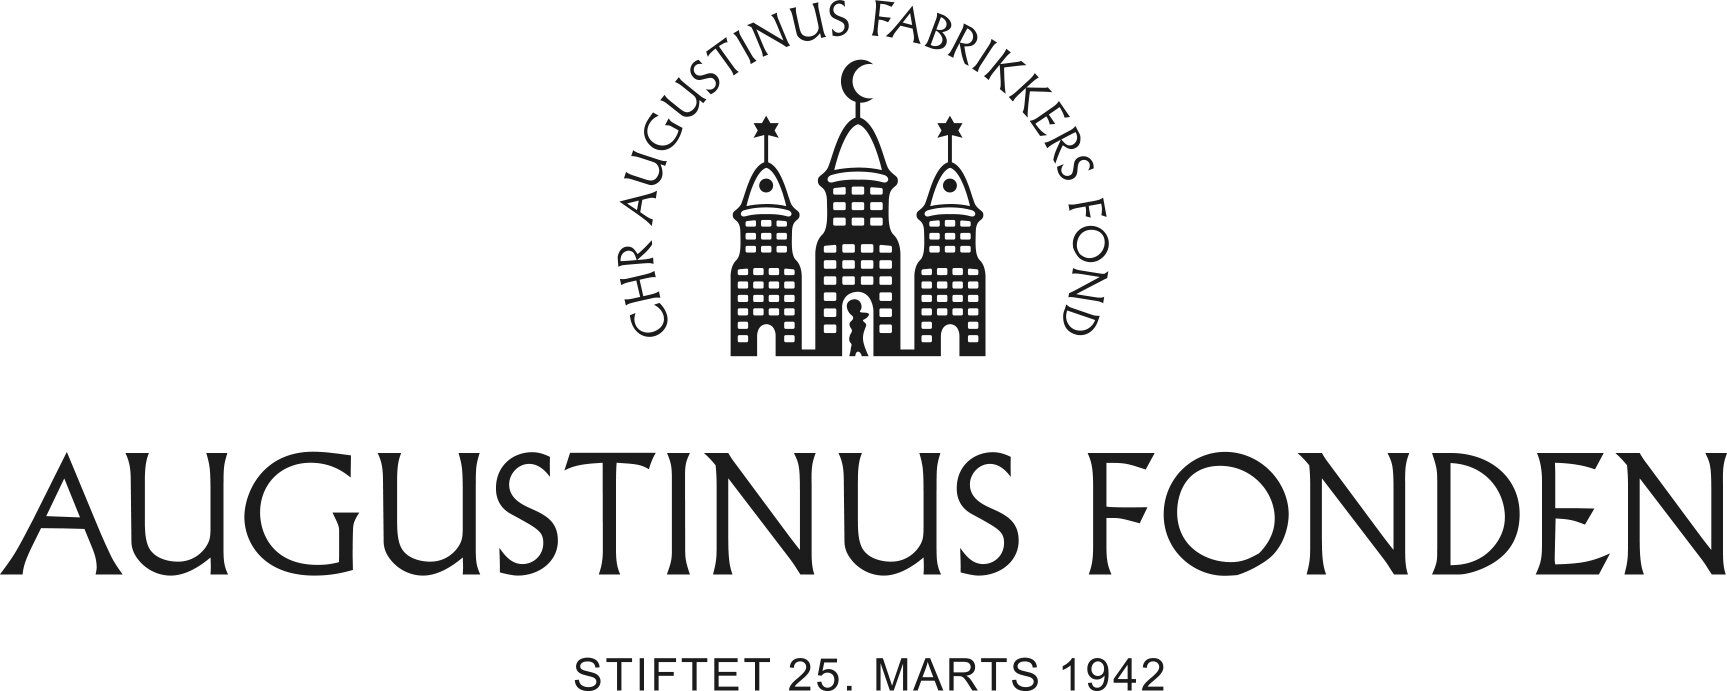 augustinus_fonden_logo.jpg